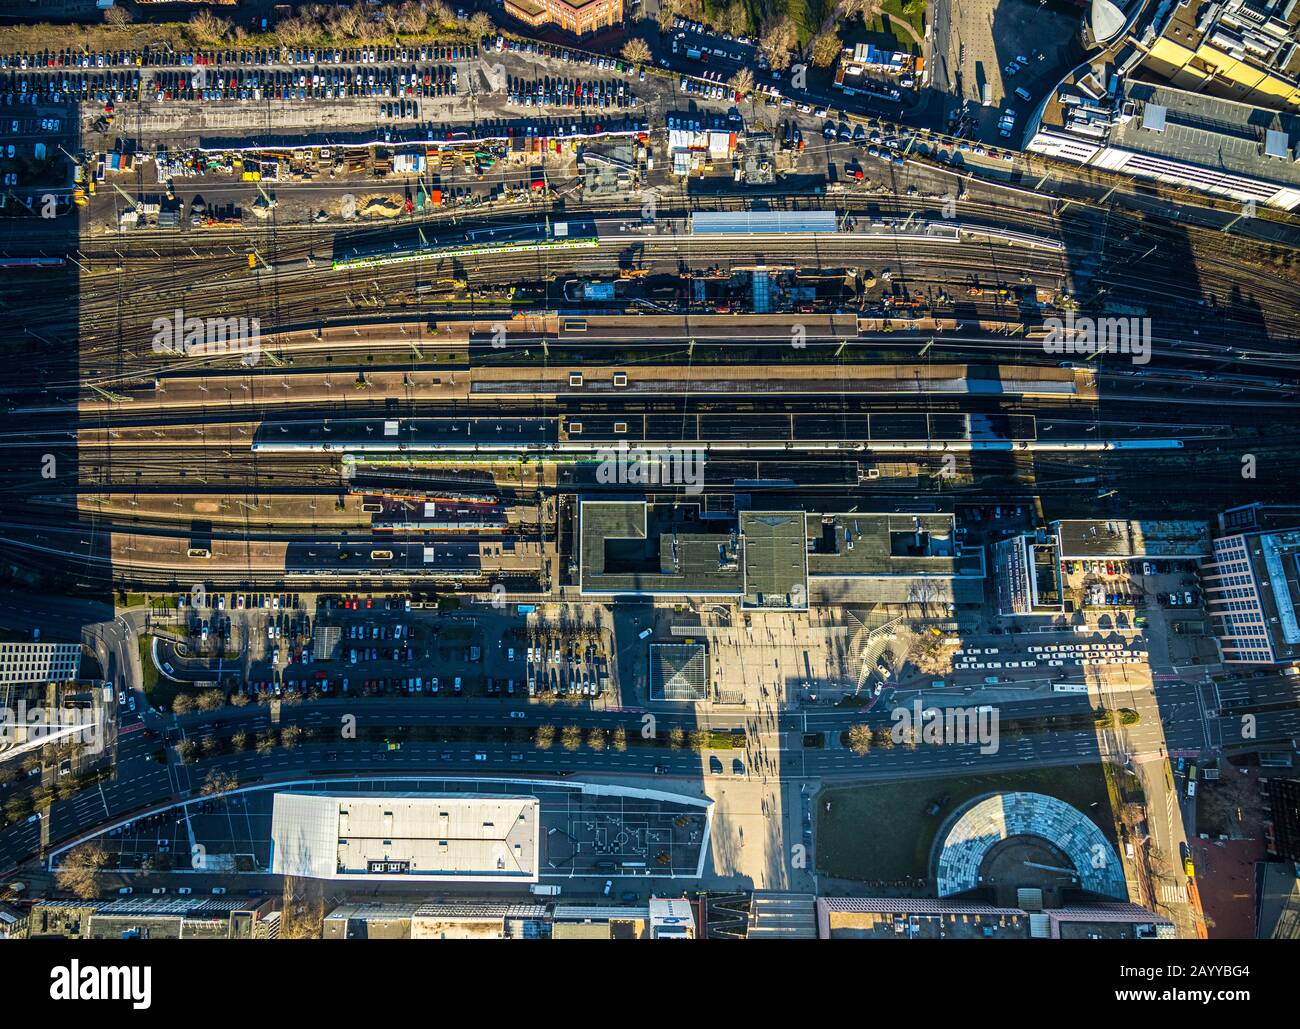 Vista aerea, stazione centrale di Dortmund con piste, parcheggi e edifici della stazione, Dortmund, zona della Ruhr, Renania Settentrionale-Vestfalia, Germania, DE, Europ Foto Stock